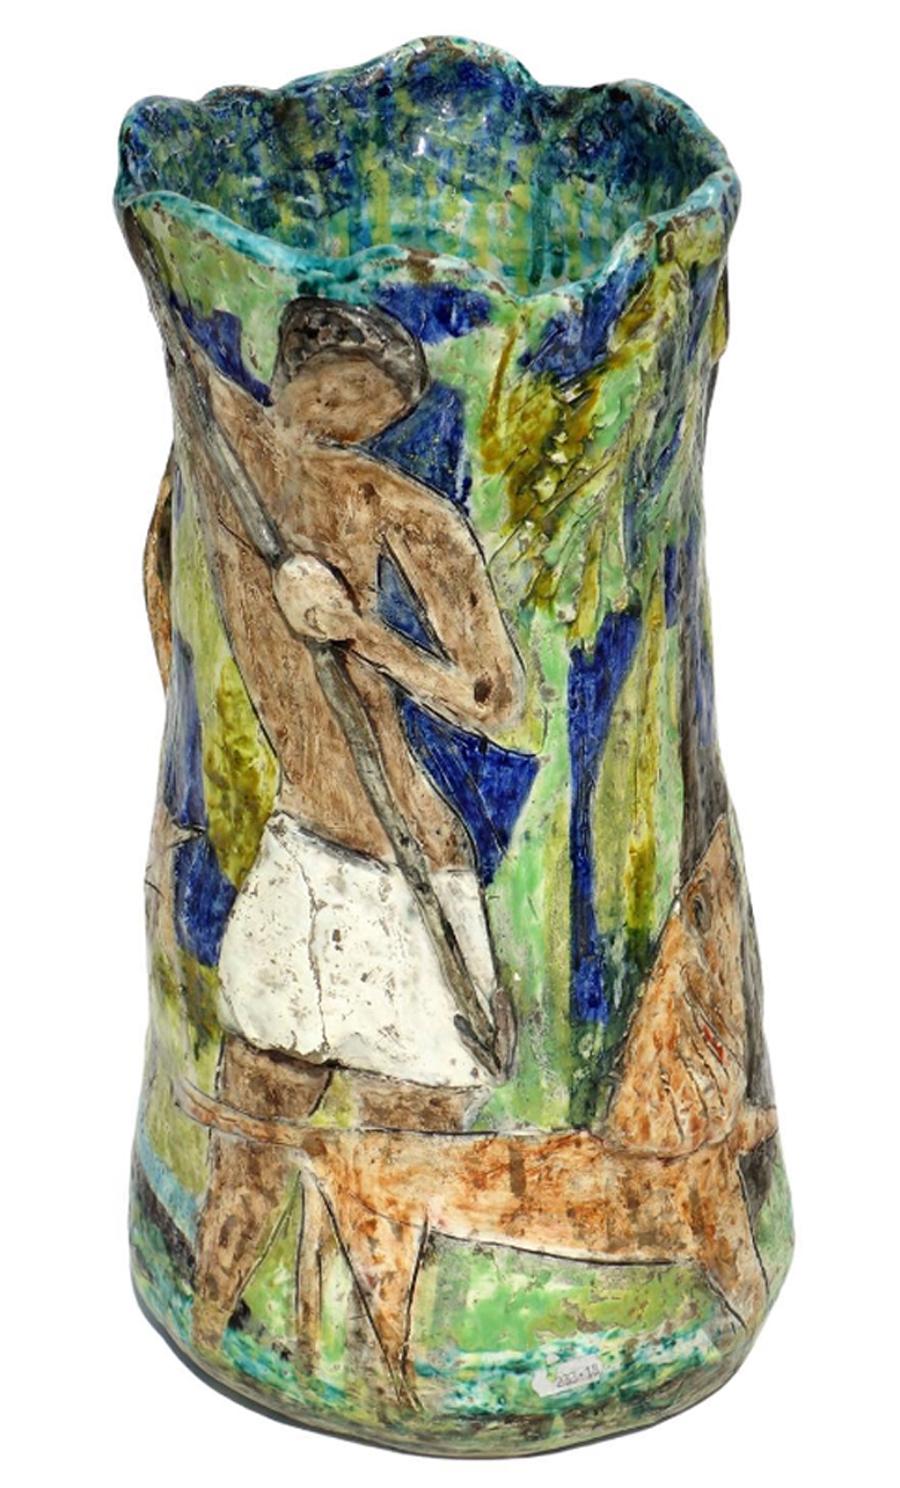  Vase en céramique émaillée colorée
Scène primitive en relief
Italie, années 1950

Sinedrio de l'Artistics sur la base.
Original des années 1950
Excellent état, pas de restauration.
